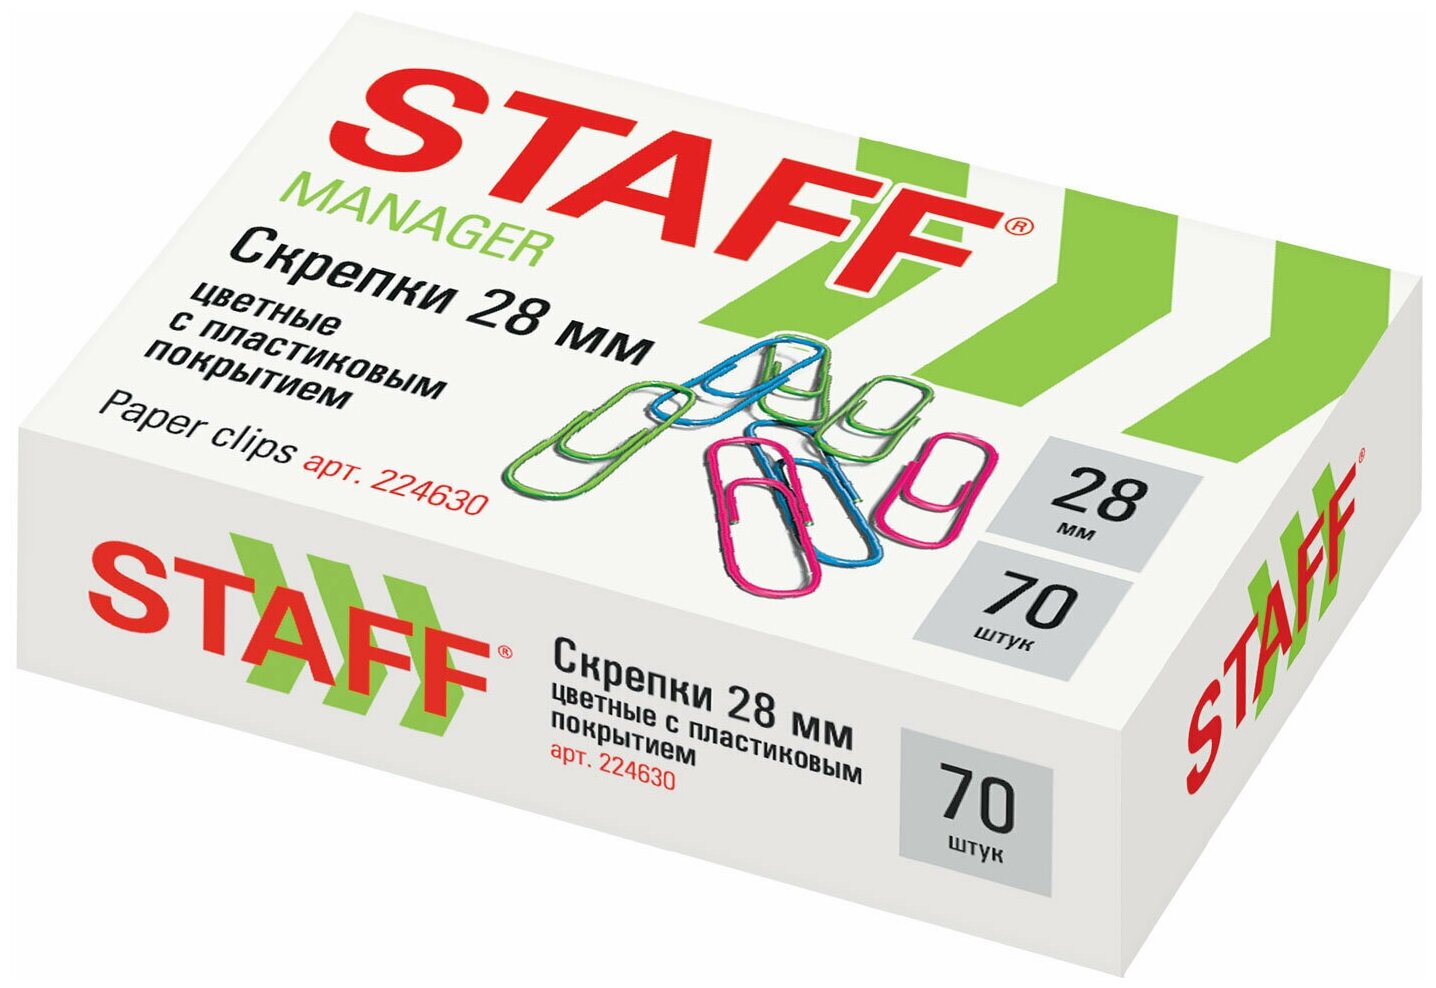 Скрепки STAFF Manager, 28 мм, цветные, 70 шт, в картонной коробке, россия, 224630